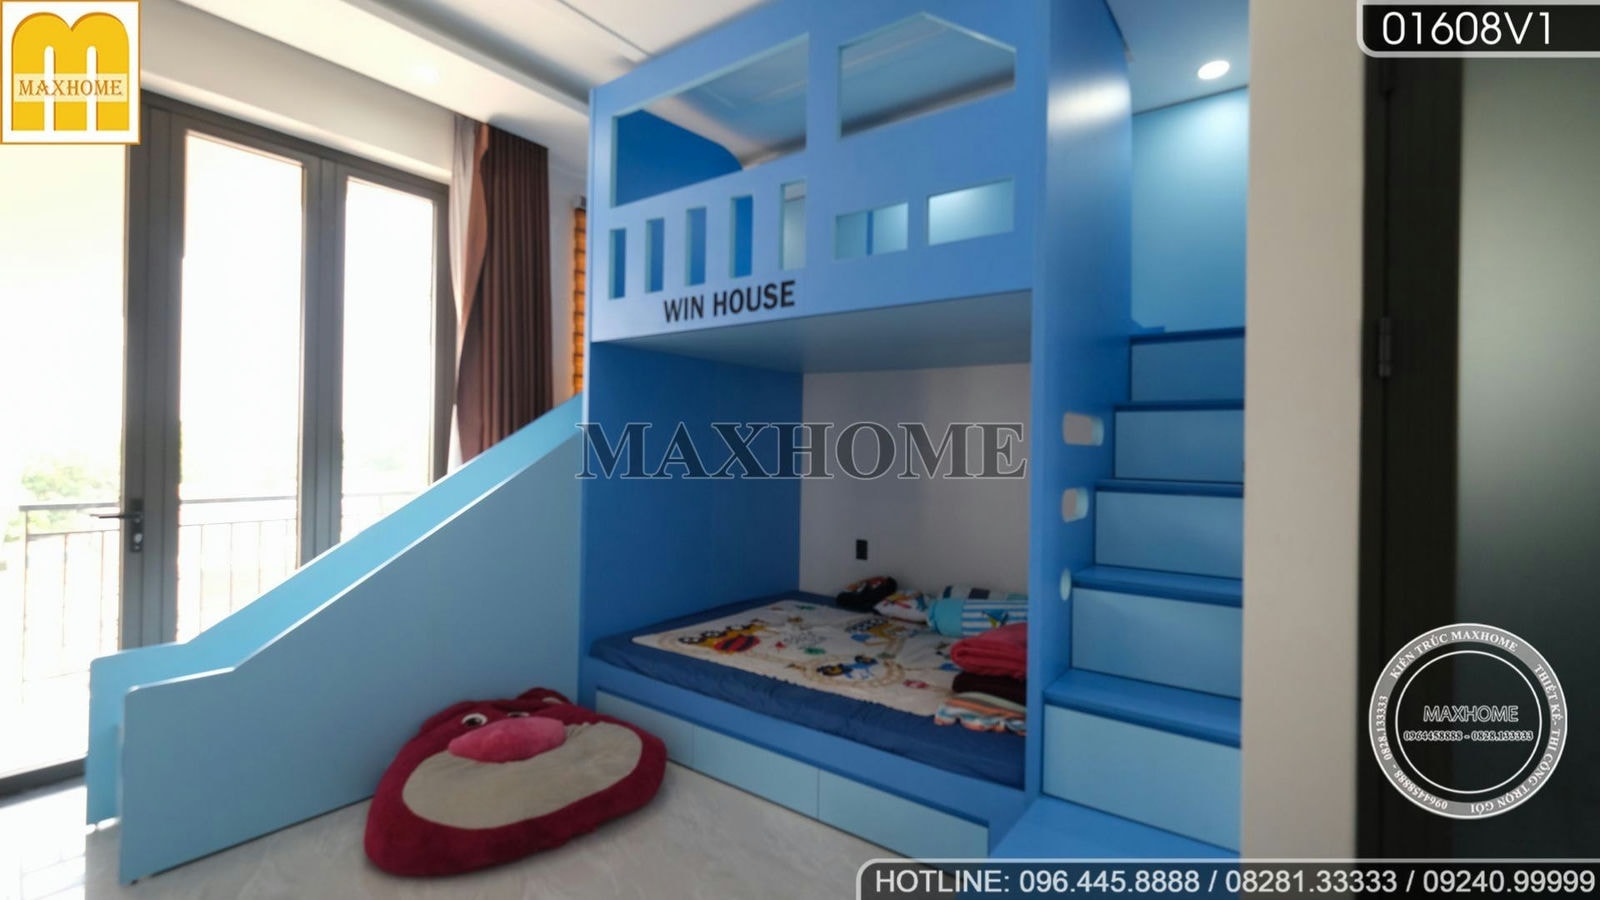 Tham quan thực tế bộ nội thất nhà phố hiện đại và cực sang tại Tây Ninh